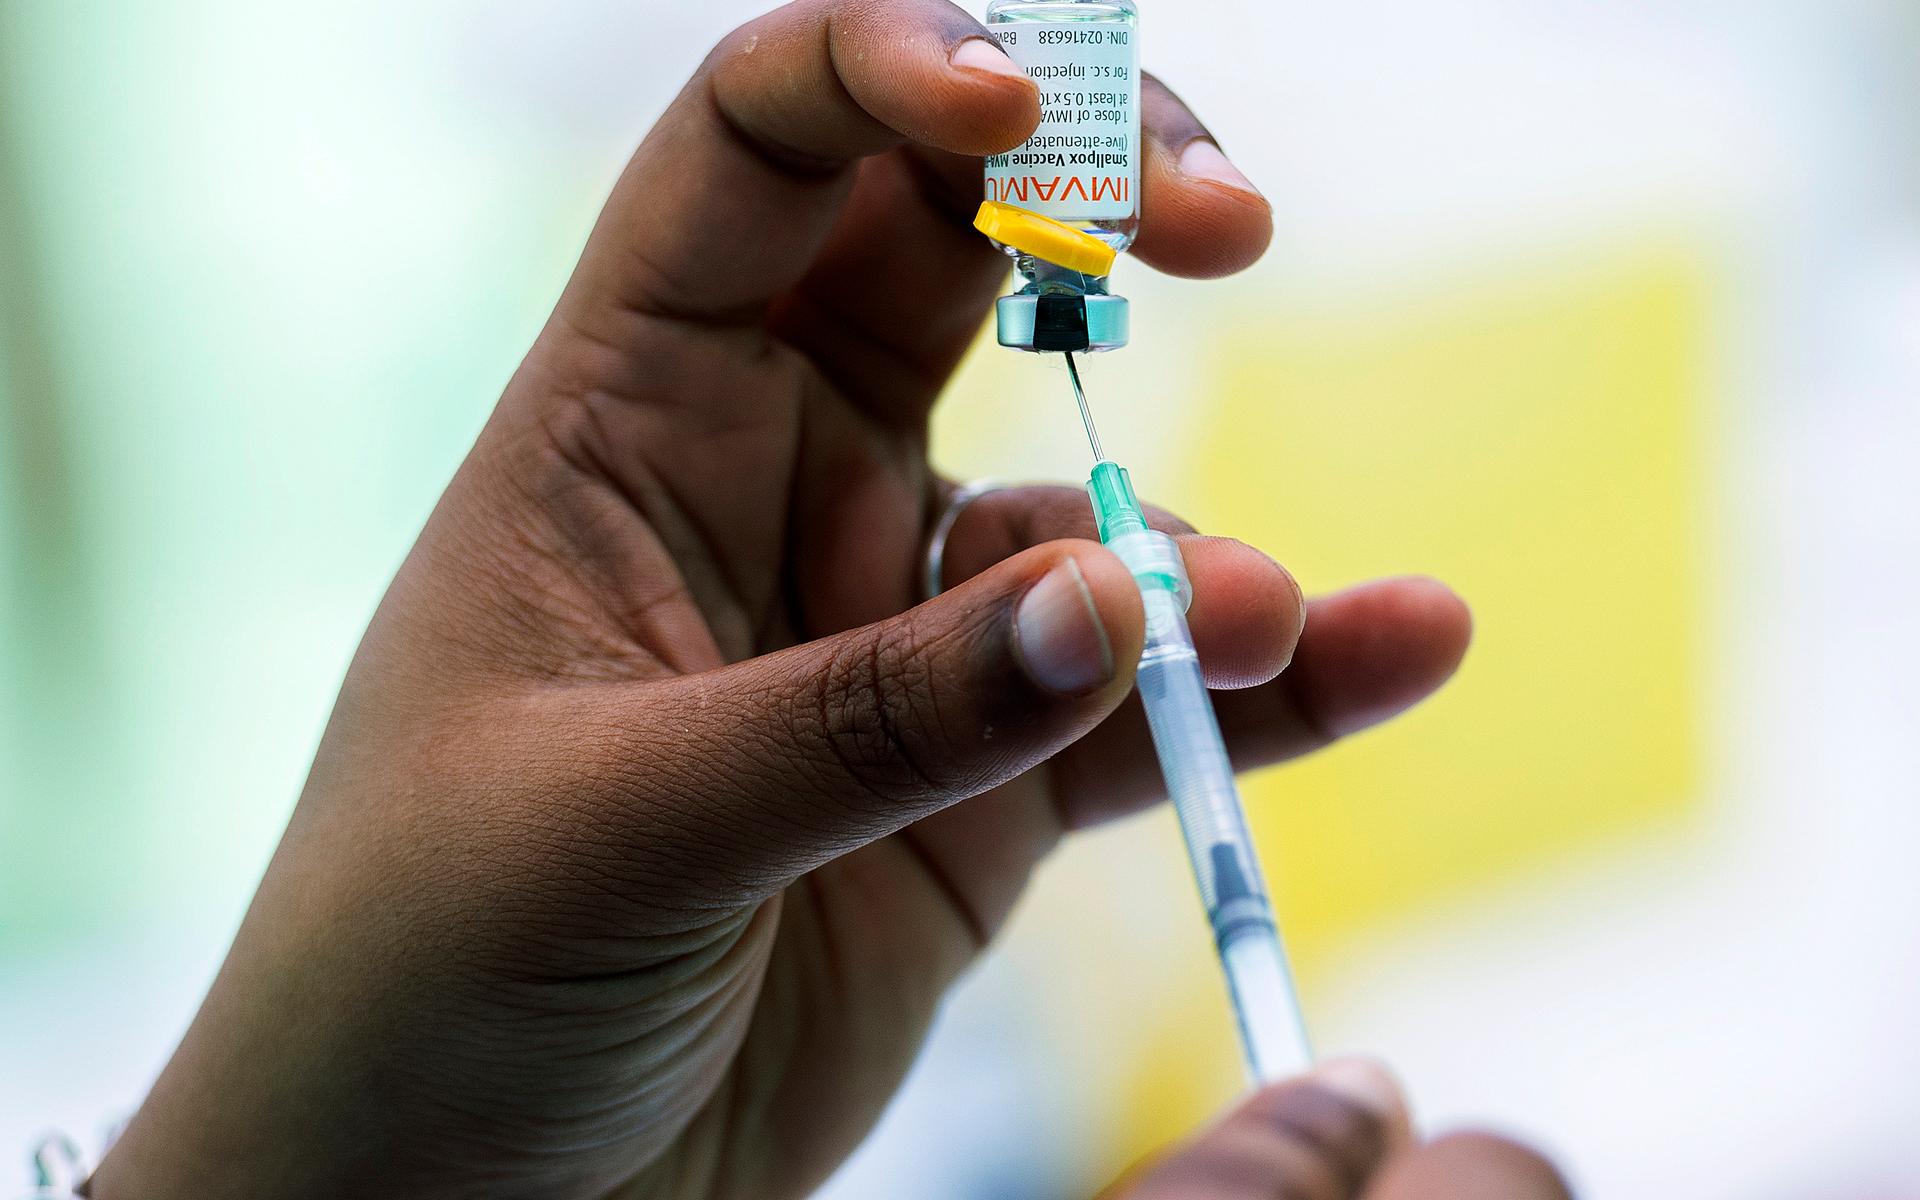 I Kanada har man redan börjat vaccinera mot apkoppor. 